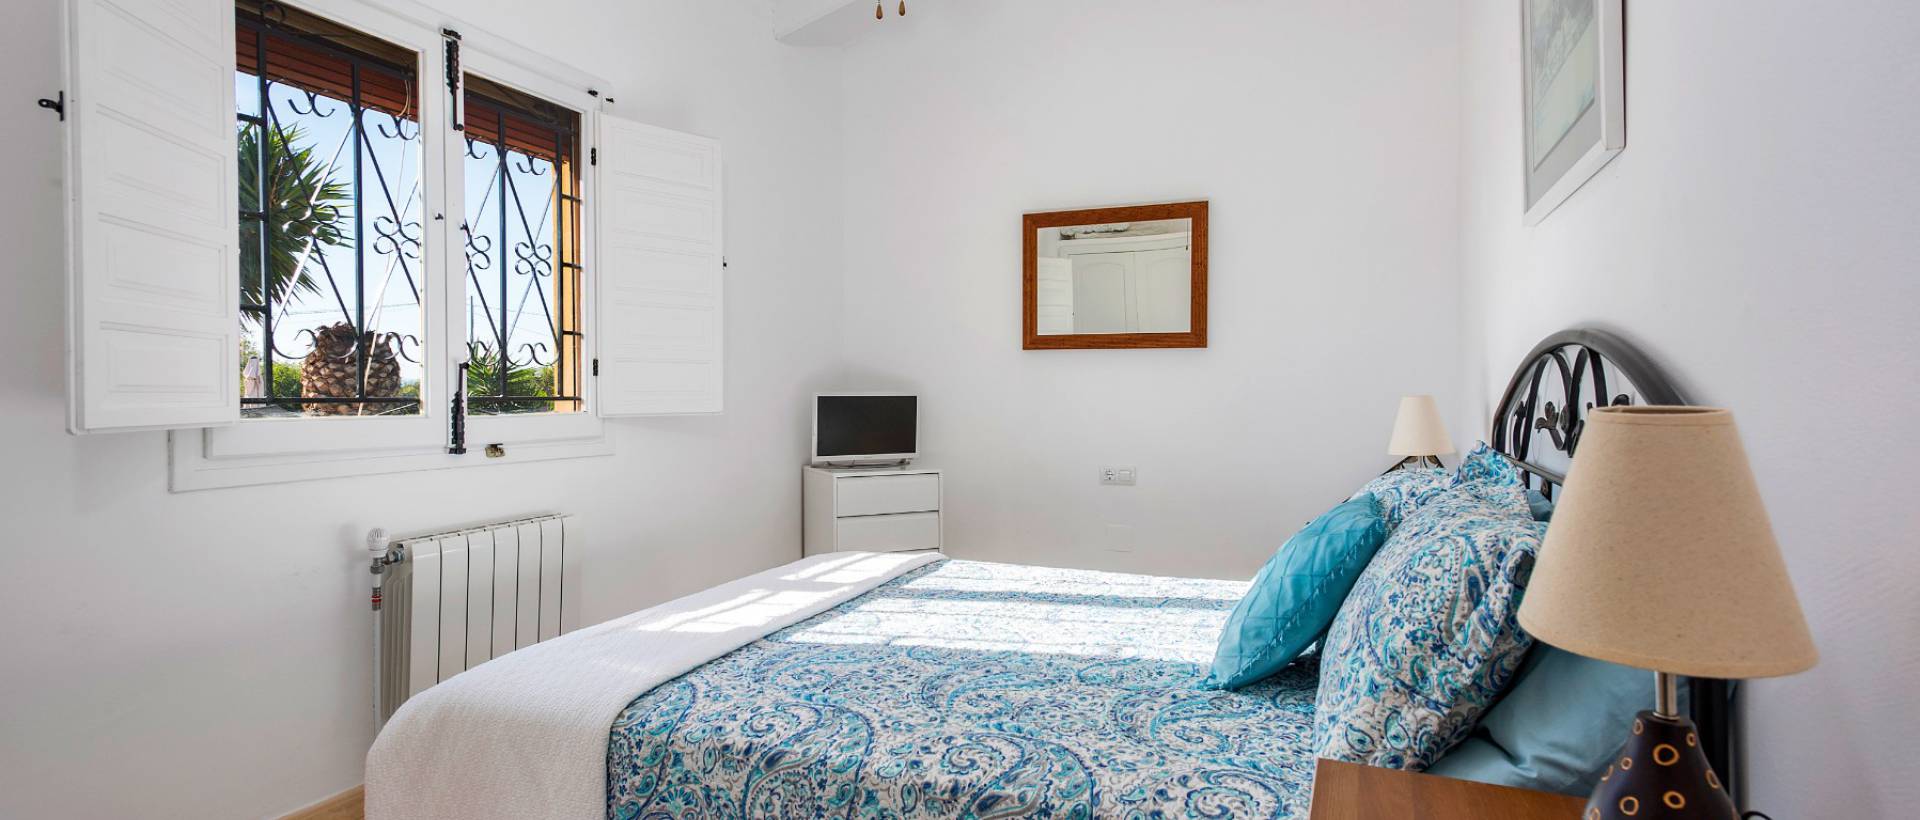 Dormitorio II | Inmobiliaria en Costa Blanca